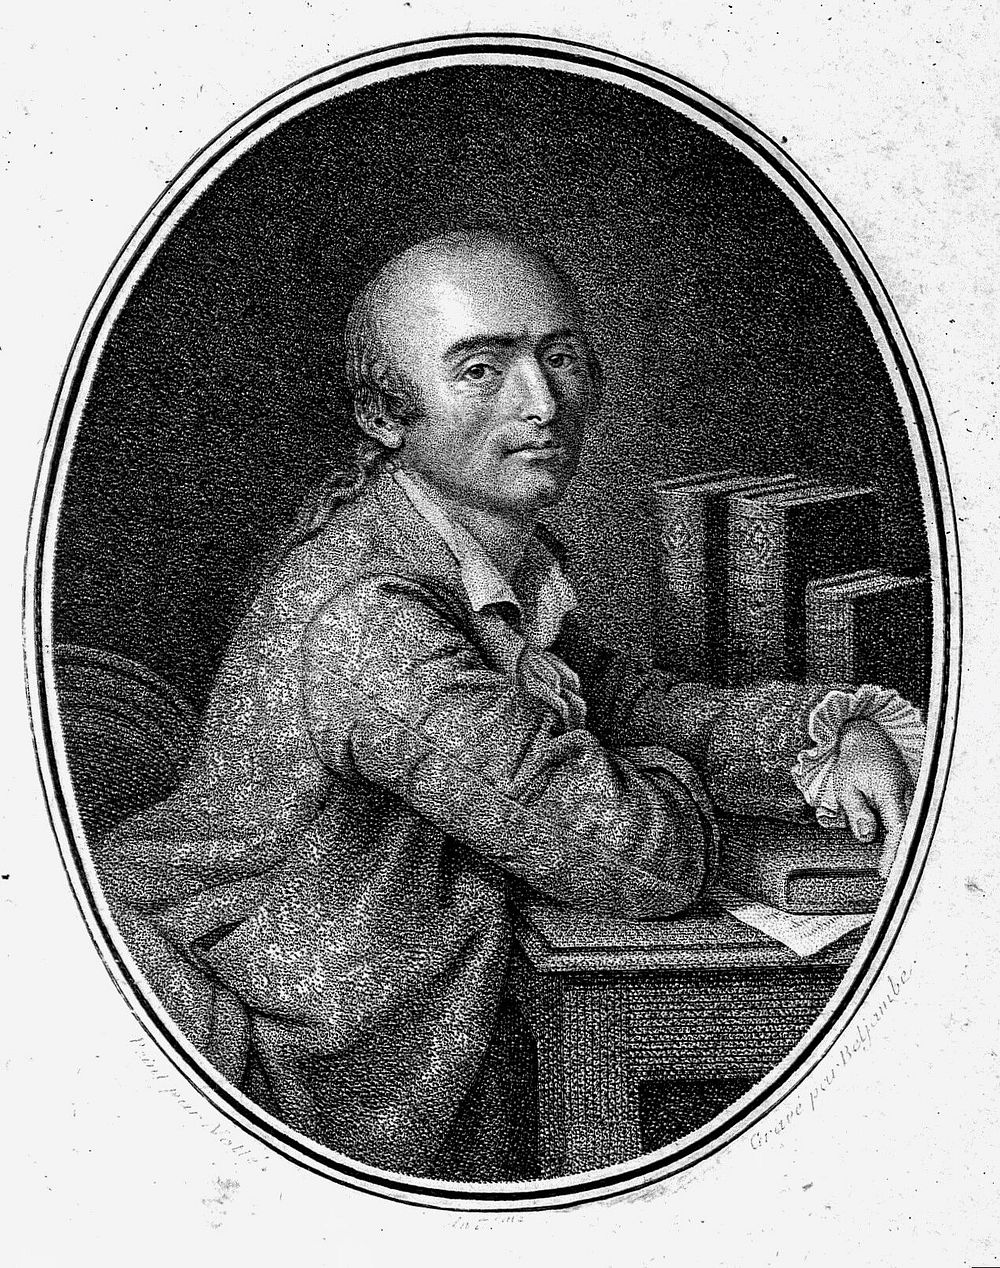 Julien Offray de La Mettrie . Stipple engraving by P.G.A. Beljambe after C.J. Notté.